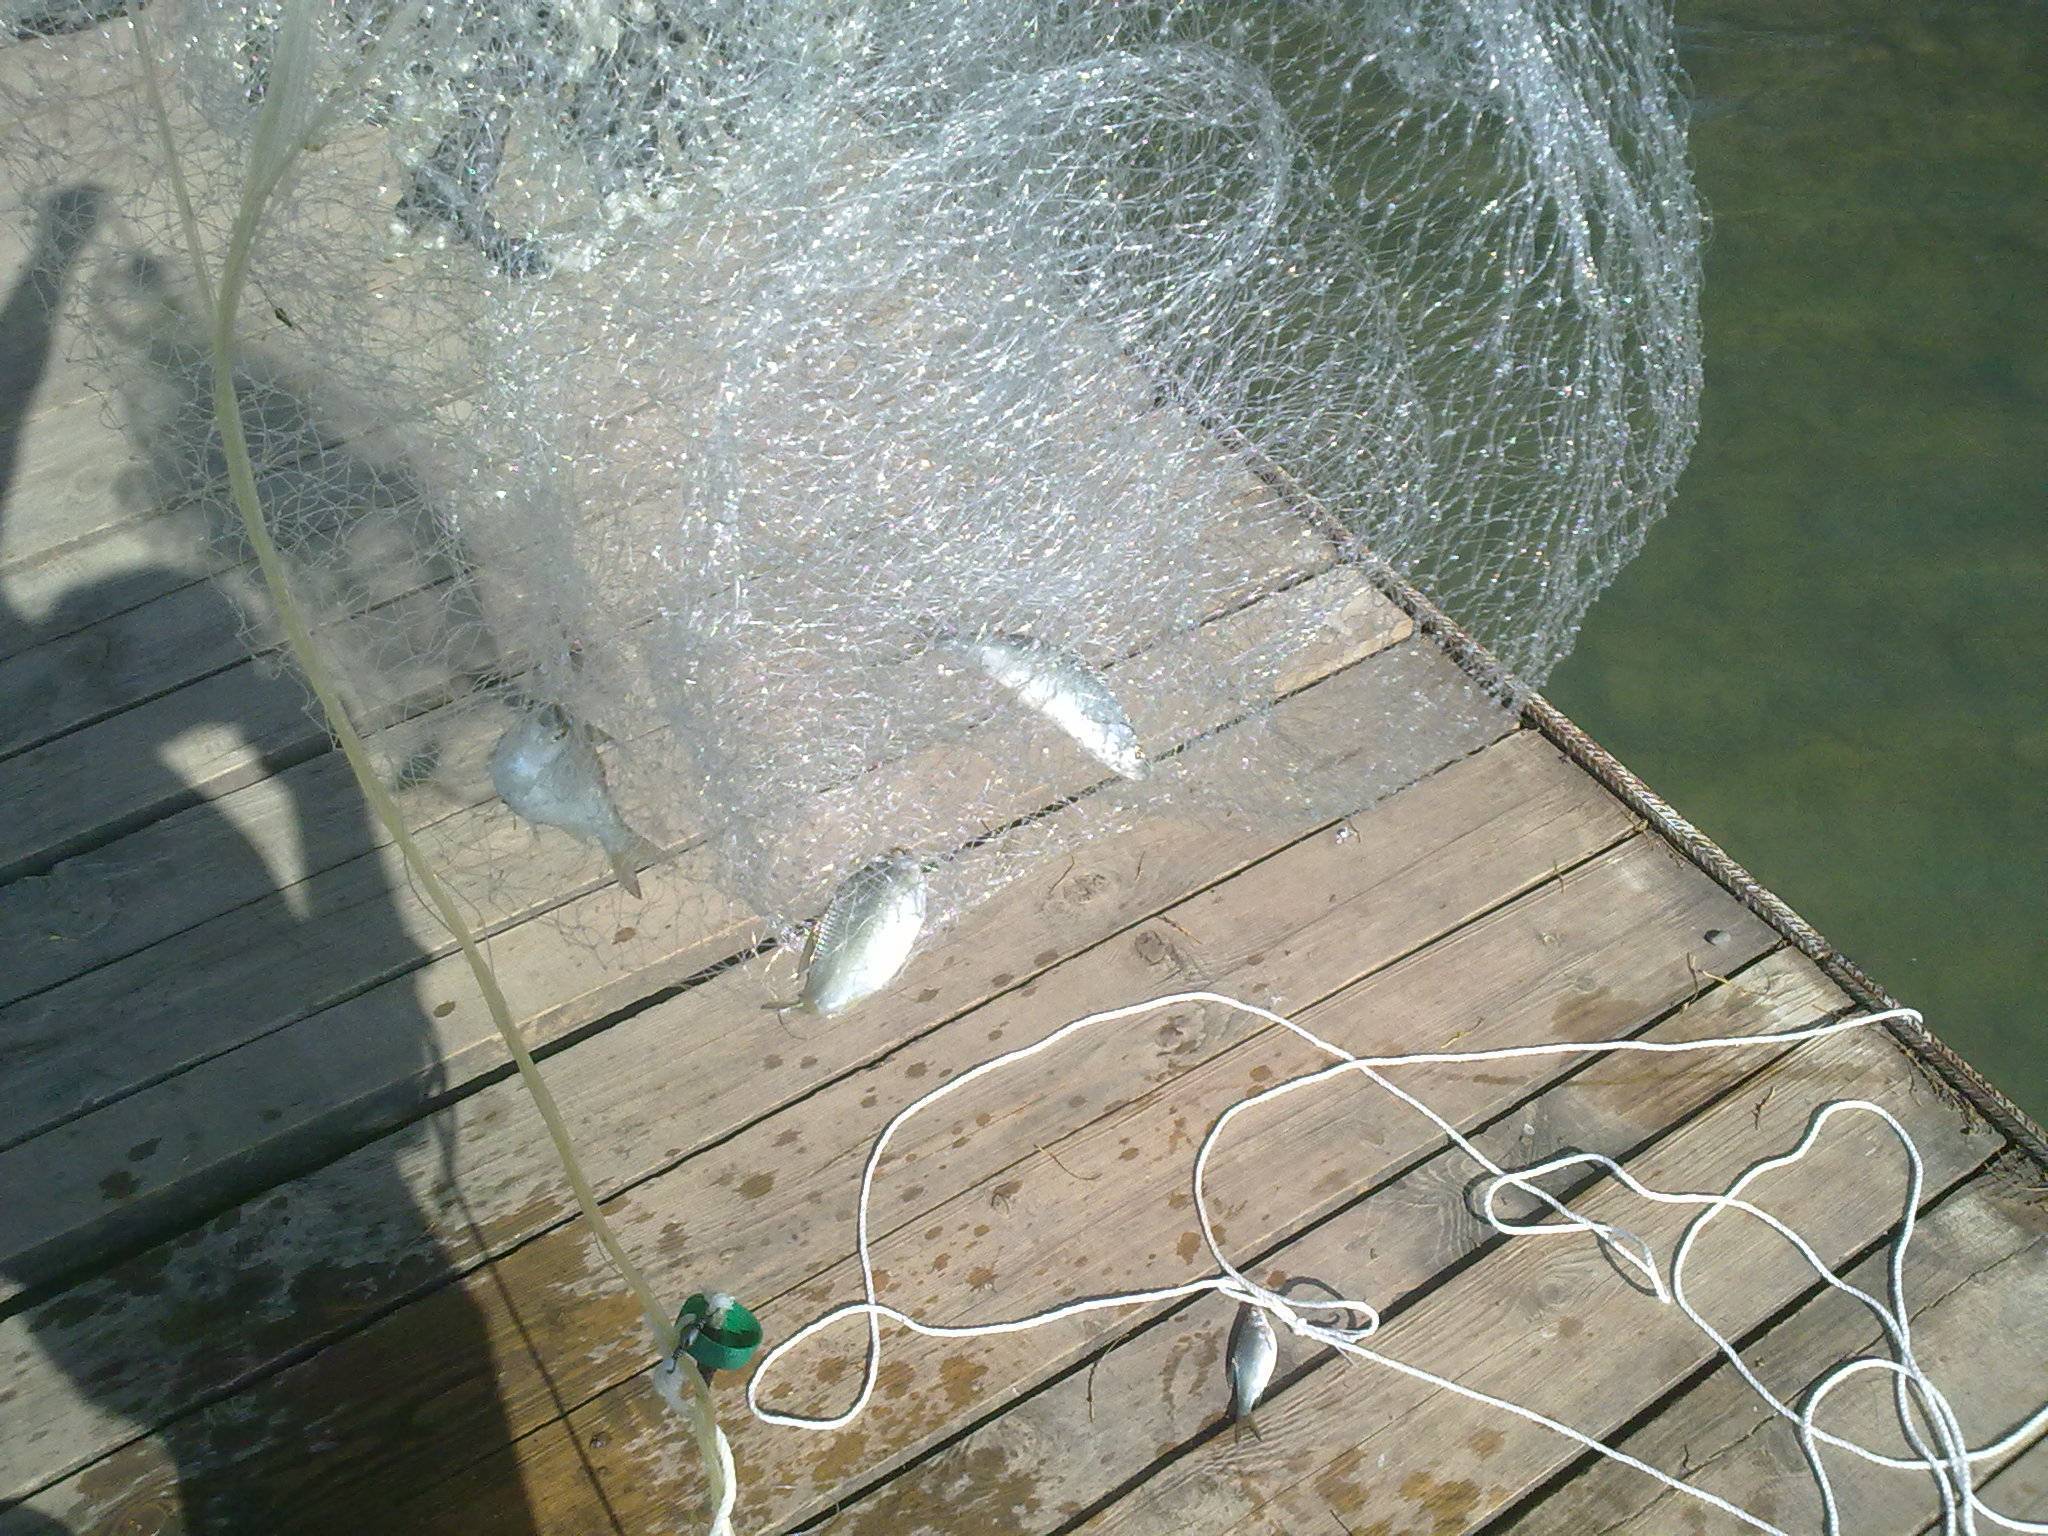 Сплавные сети: рыбалка верховой сетью. как ловить рыболовным сплавом на реке? как сделать правильную оснастку?